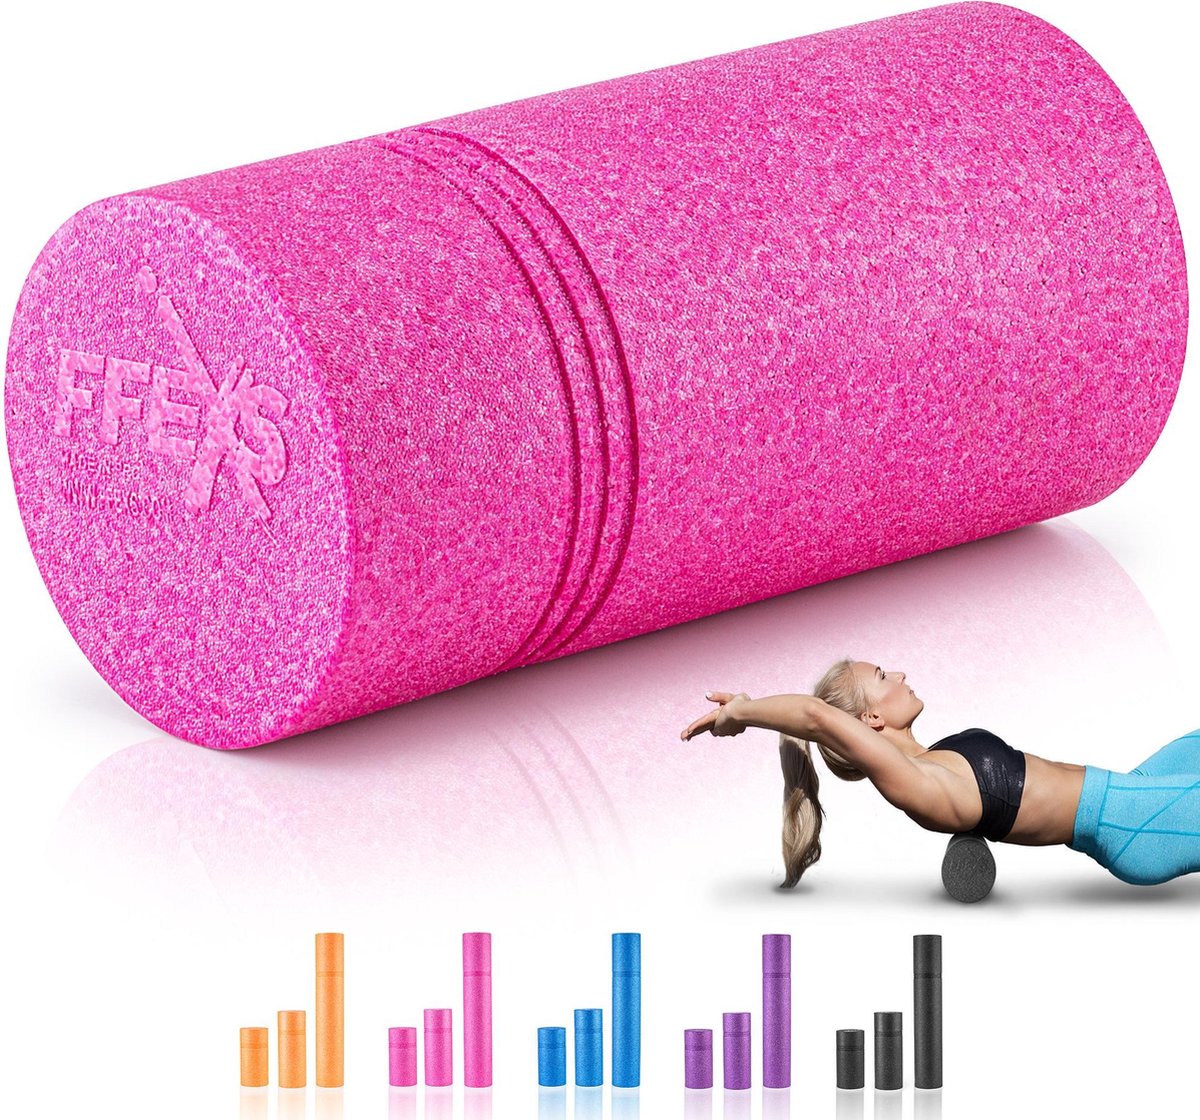 FFEXS Foam Roller - Therapie & Massage voor rug benen kuiten billen dijen - Perfecte zelfmassage voor sport fitness [Hard] - 30 CM - Rose